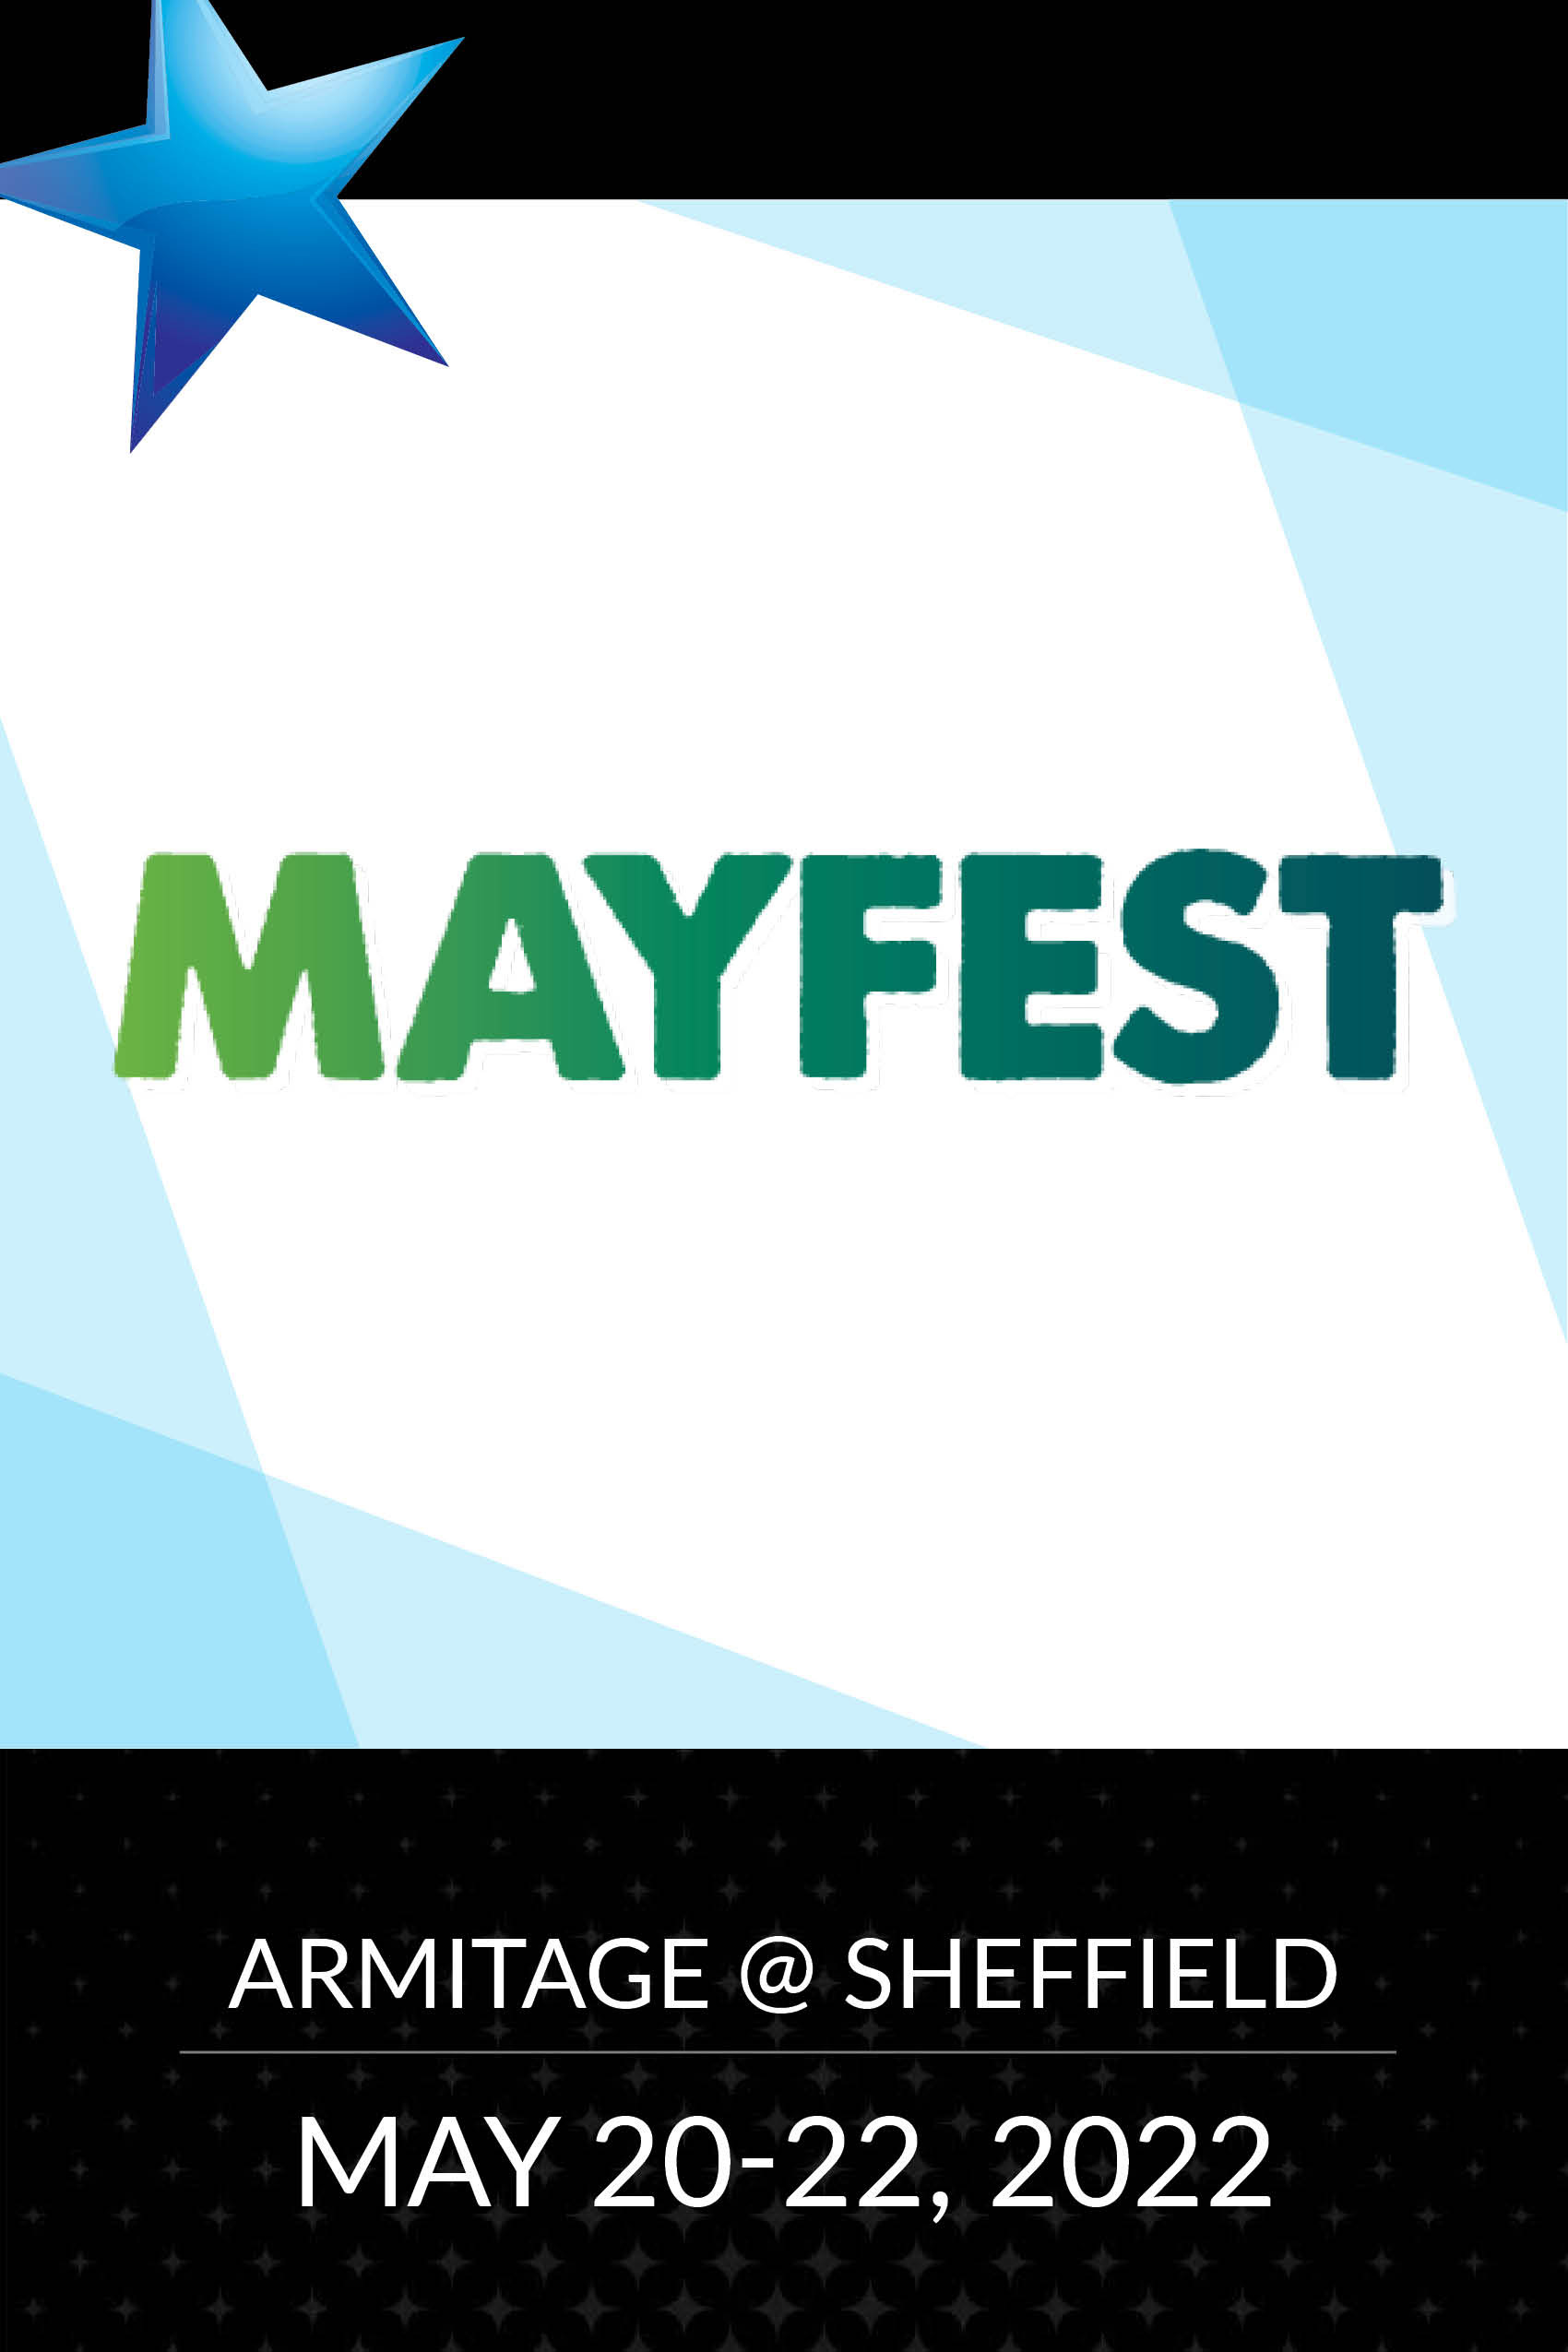 Mayfest 2022